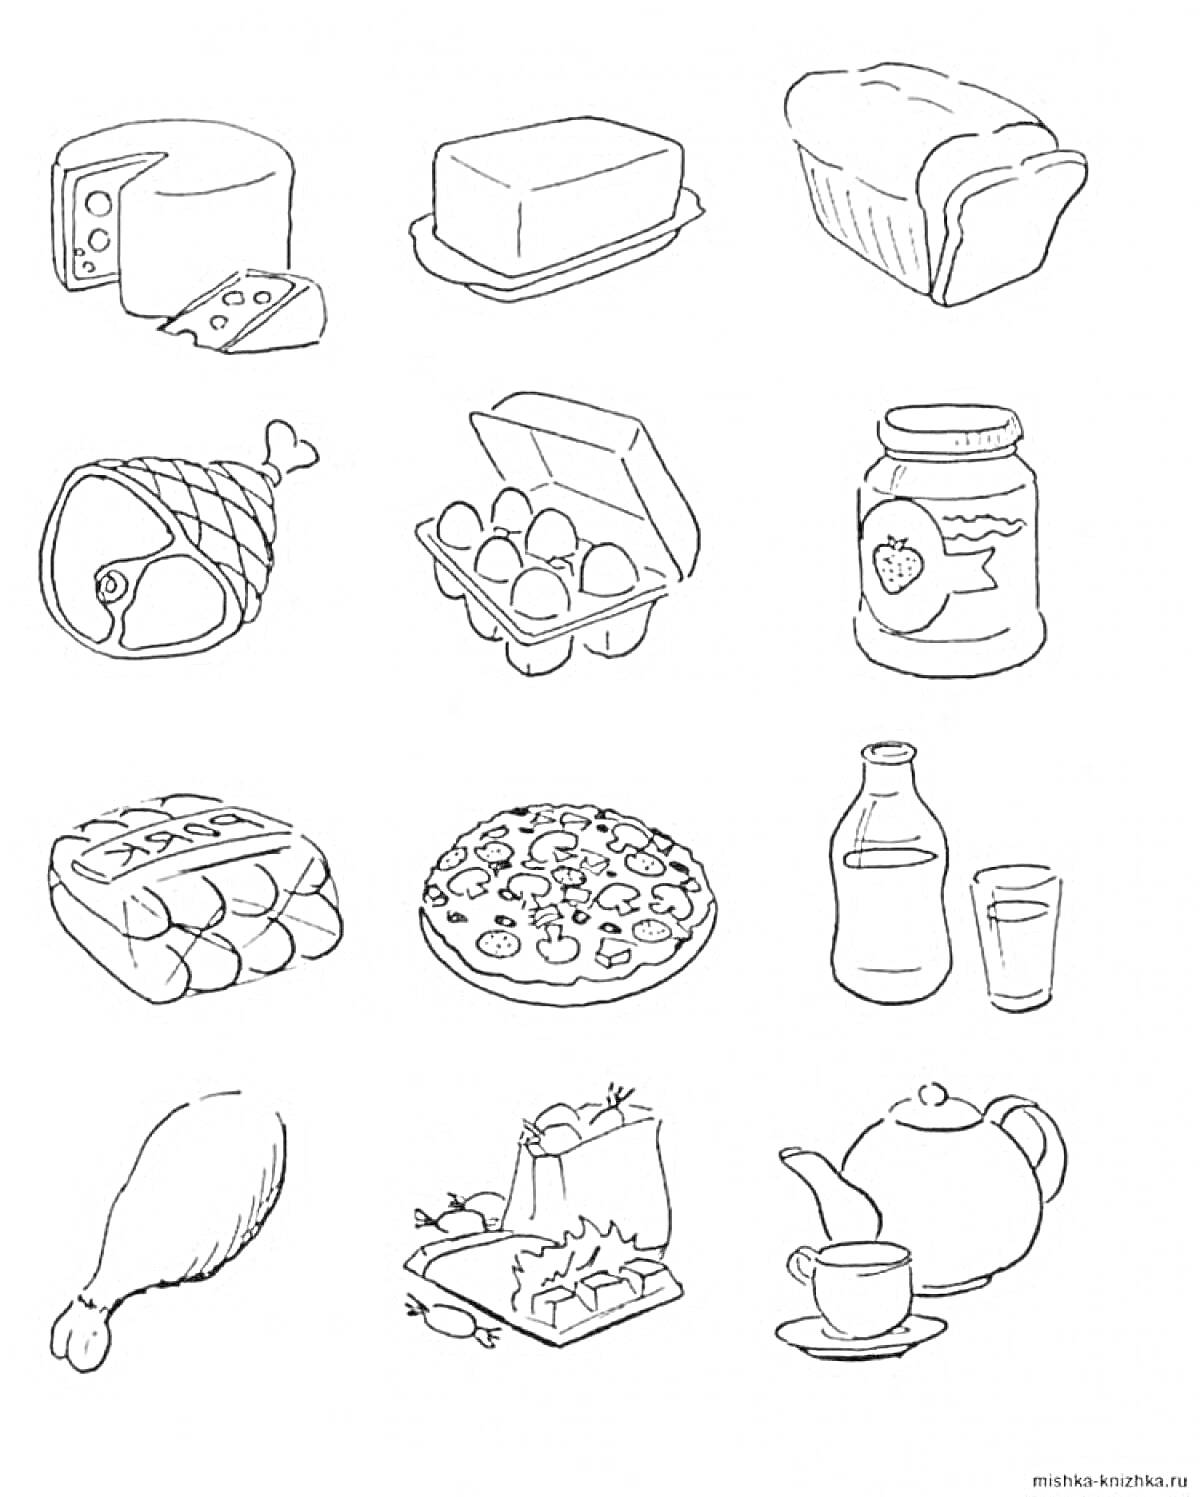 Раскраска Сыр, масло, хлеб, ветчина, яйца, банка с клубничным джемом, батон хлеба, пицца, бутылка молока и стакан, куриная ножка, коробка с суши, чайник и чашка